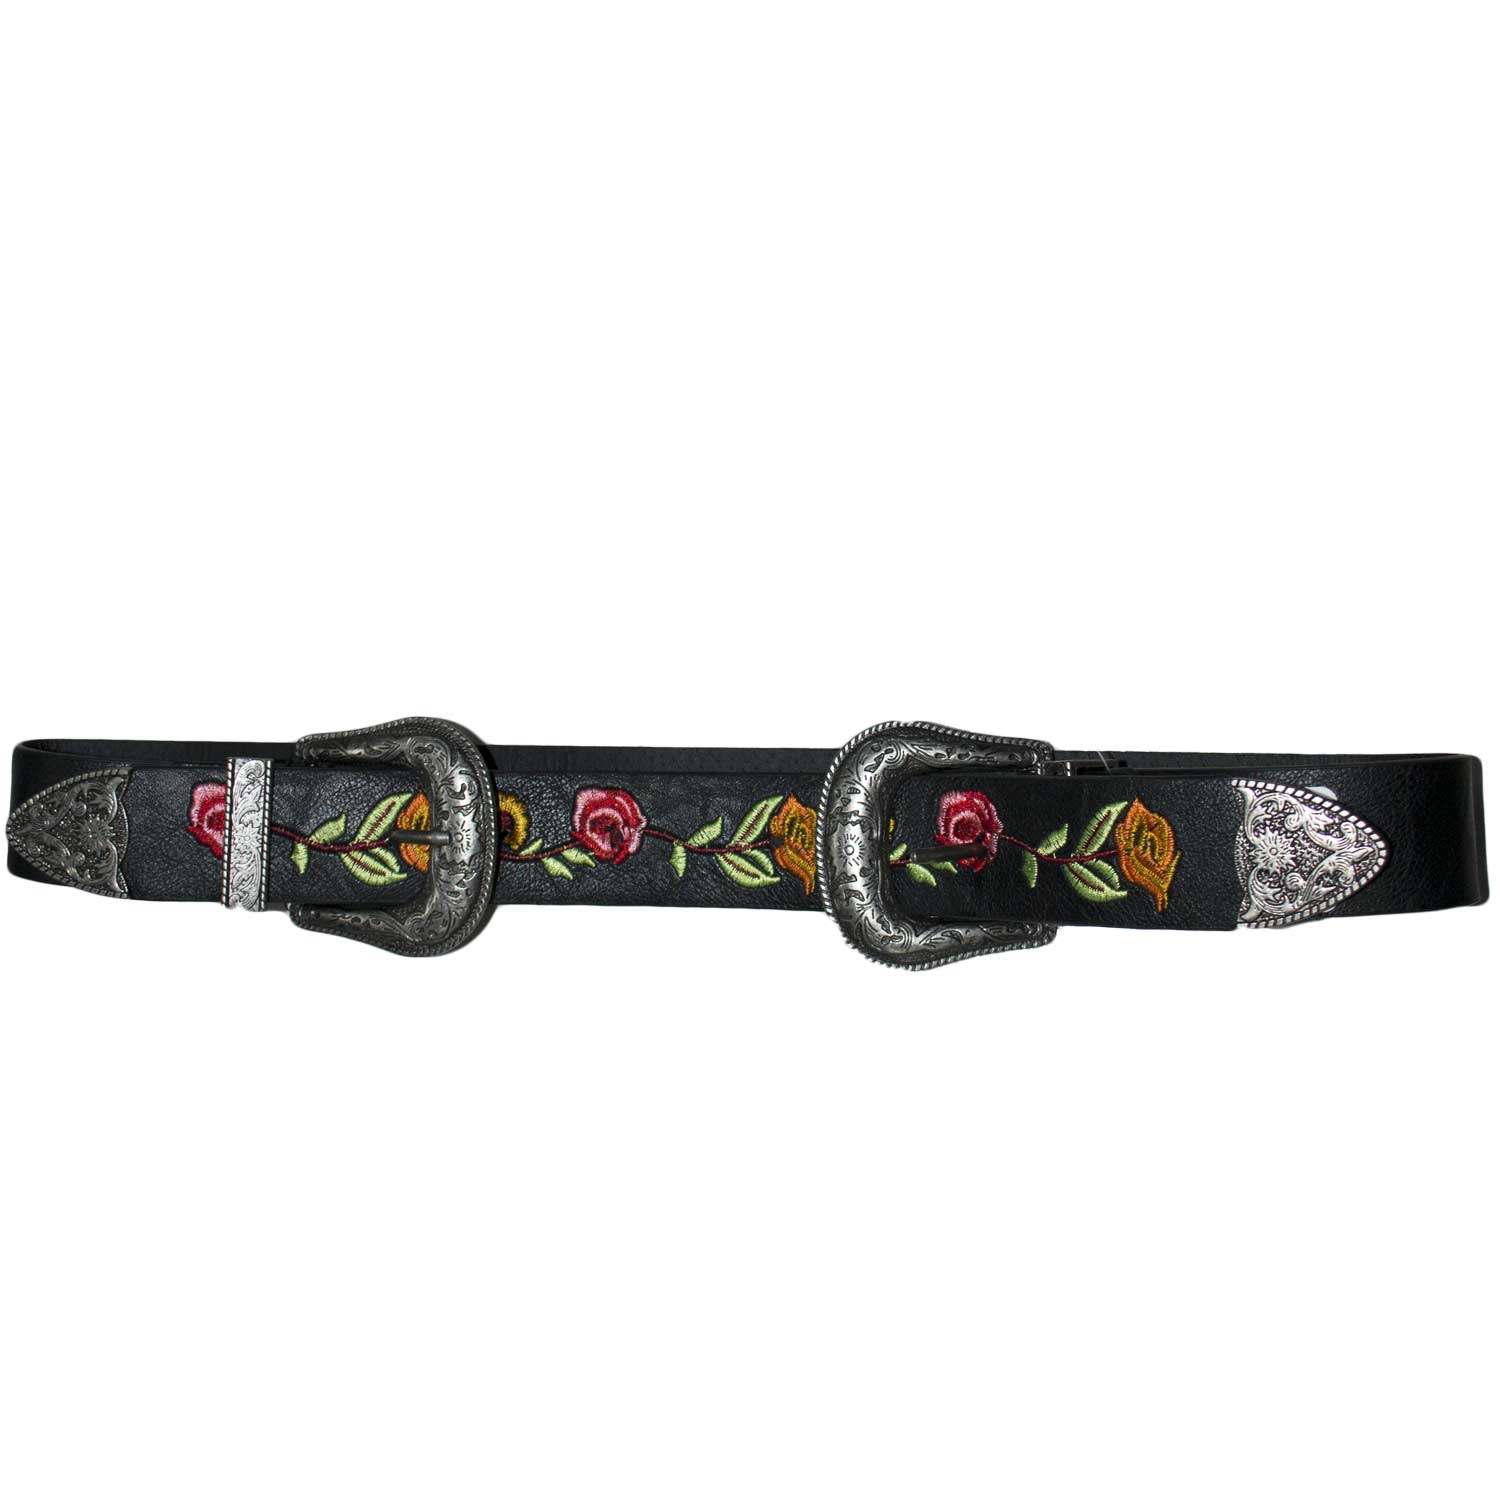 Cintura doppia fibbia alta borchie stile vintage nera floreale modello marcuzzi.